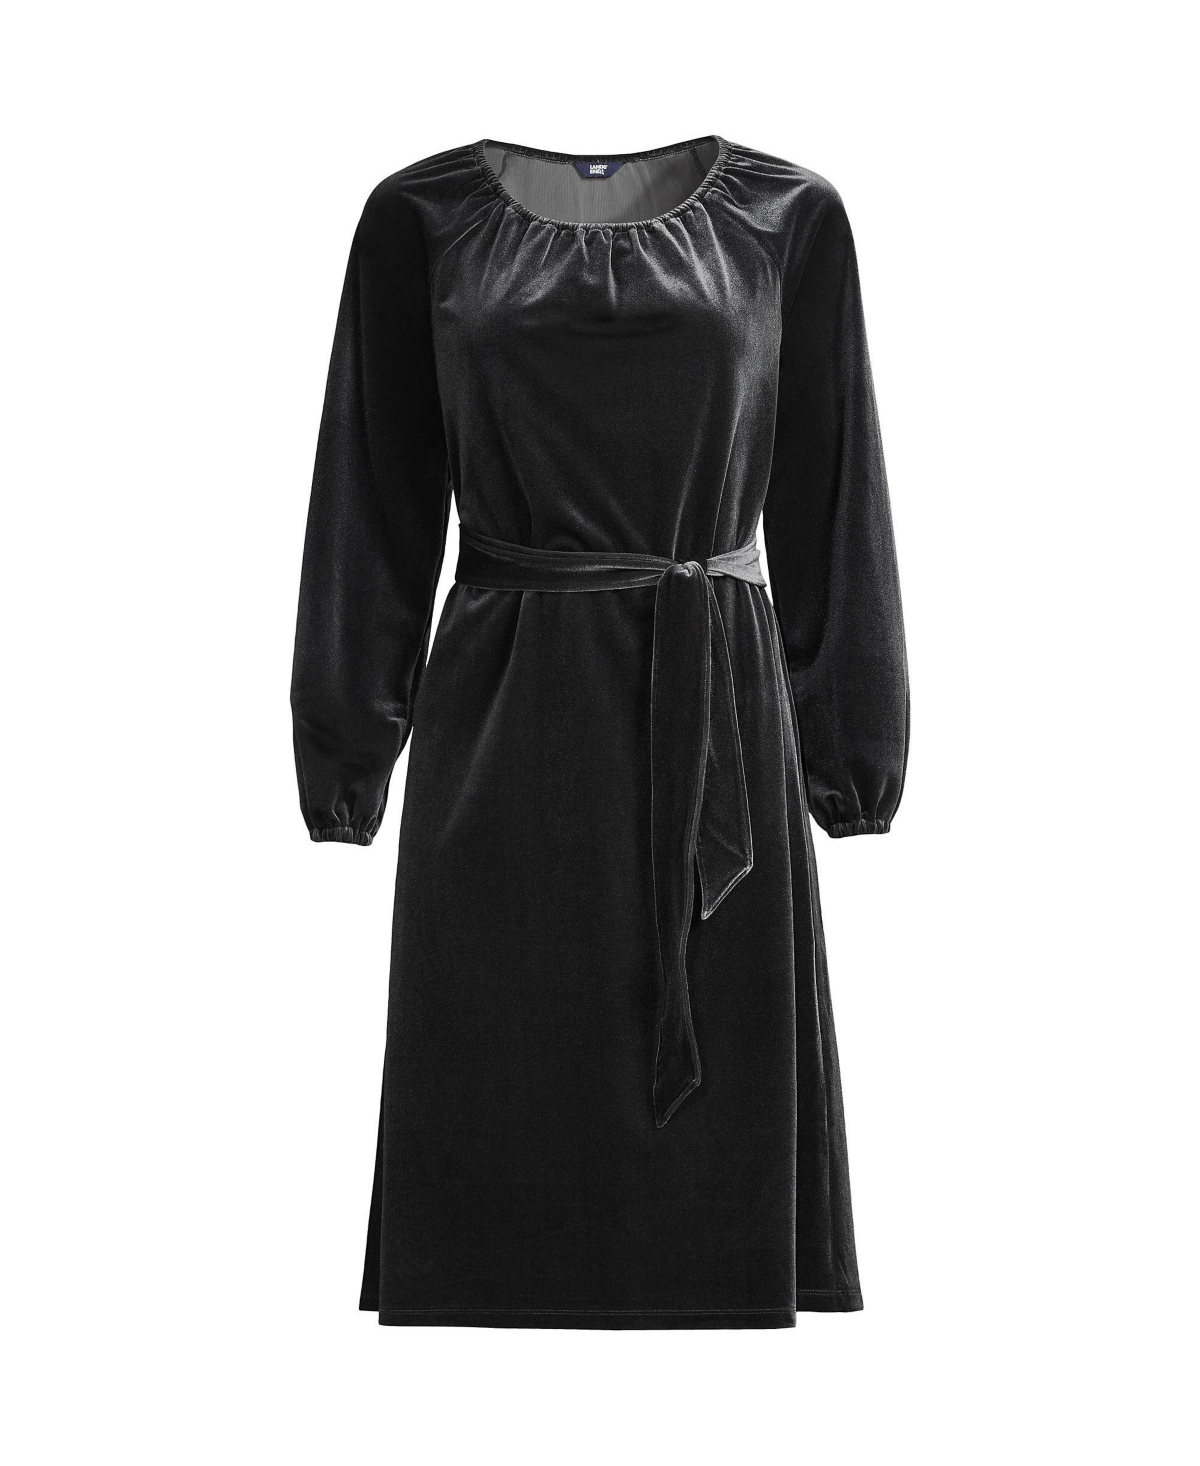 Women's Plus Size Velvet Peasant Knee Length Dress - Black